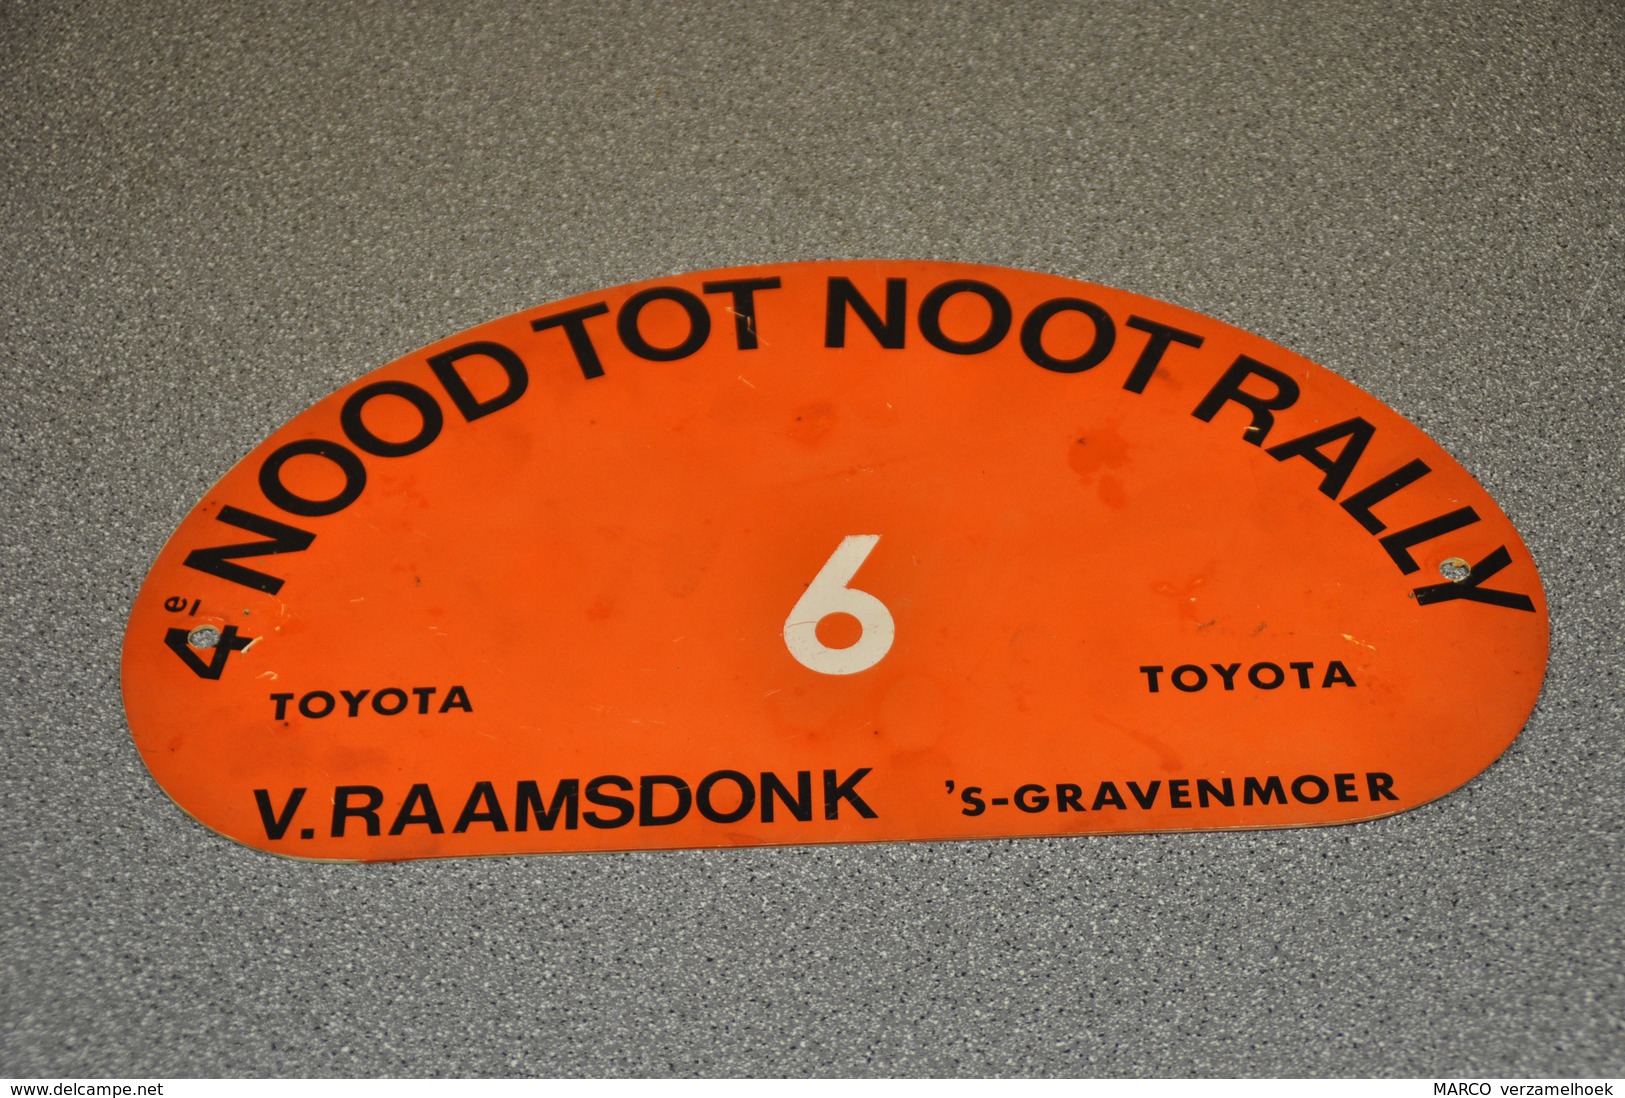 Rally Plaat-rallye Plaque Plastic: 4e Nood Tot Noot Rally Toyota Van Raamsdonk 's-gravenmoer (NL) - Plaques De Rallye